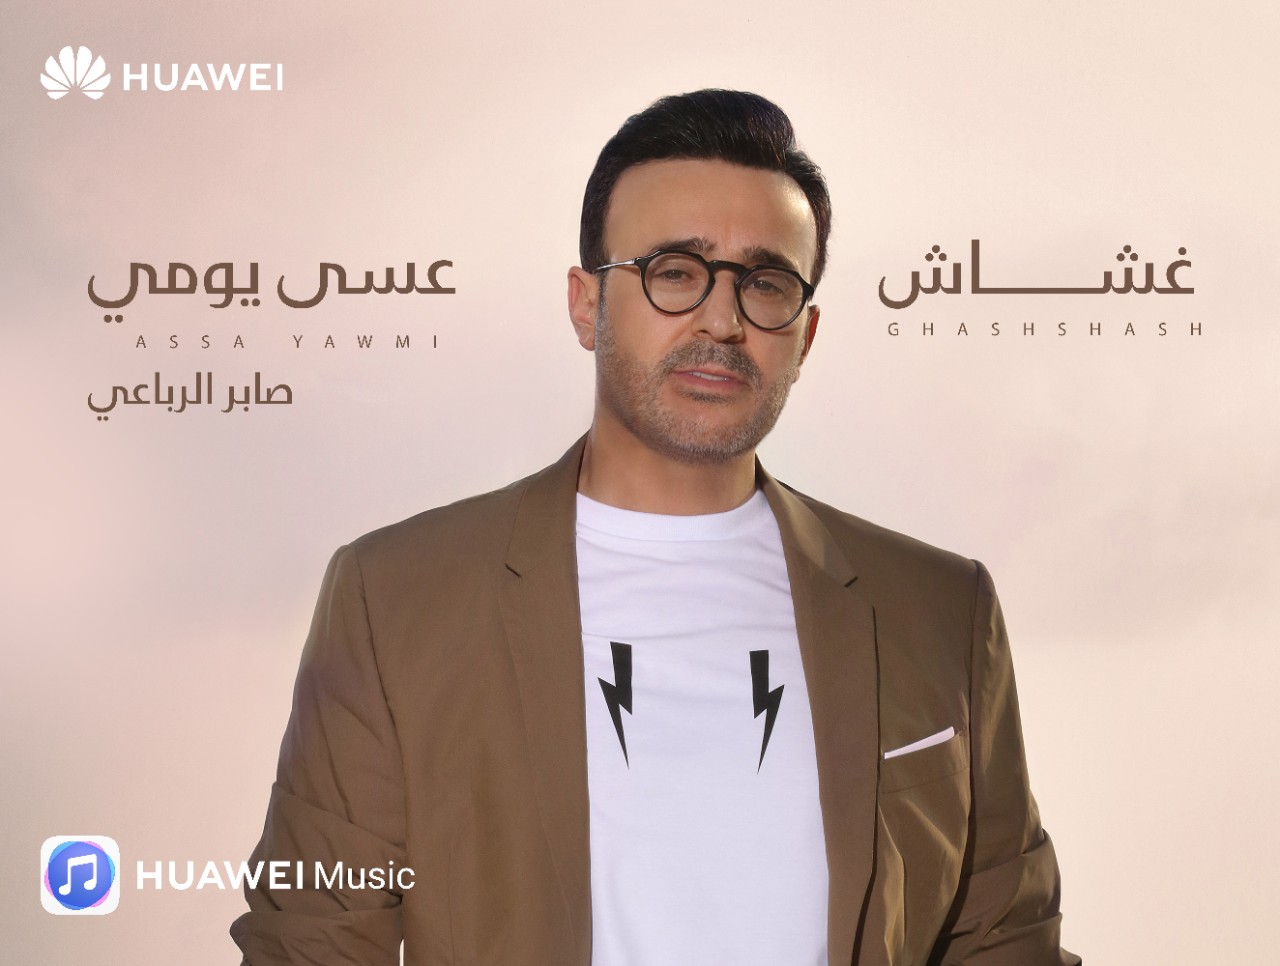 محققاً نجاح كبير خلال أربعة أيام فقط هواوي تصدر أغنيتين جديدتين لأمير الطرب العربي صابر الرباعي حصرياً على تطبيق Huawei Music